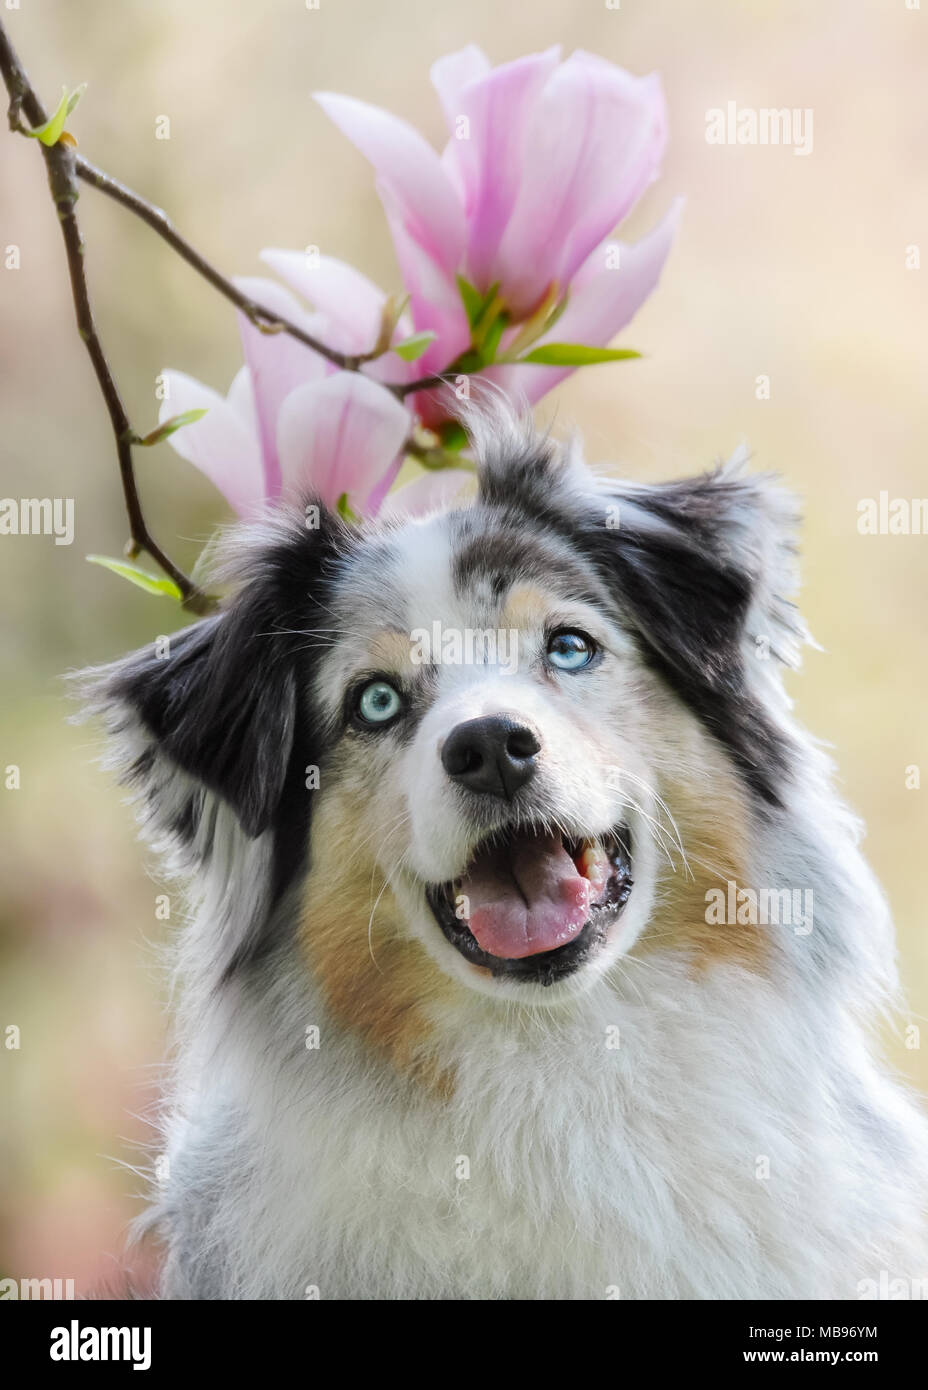 Carino pastore australiano cane femmina, colore blu merle rame bianco con gli occhi blu, frontale verticale nella parte anteriore di rosa fiori di magnolia Foto Stock